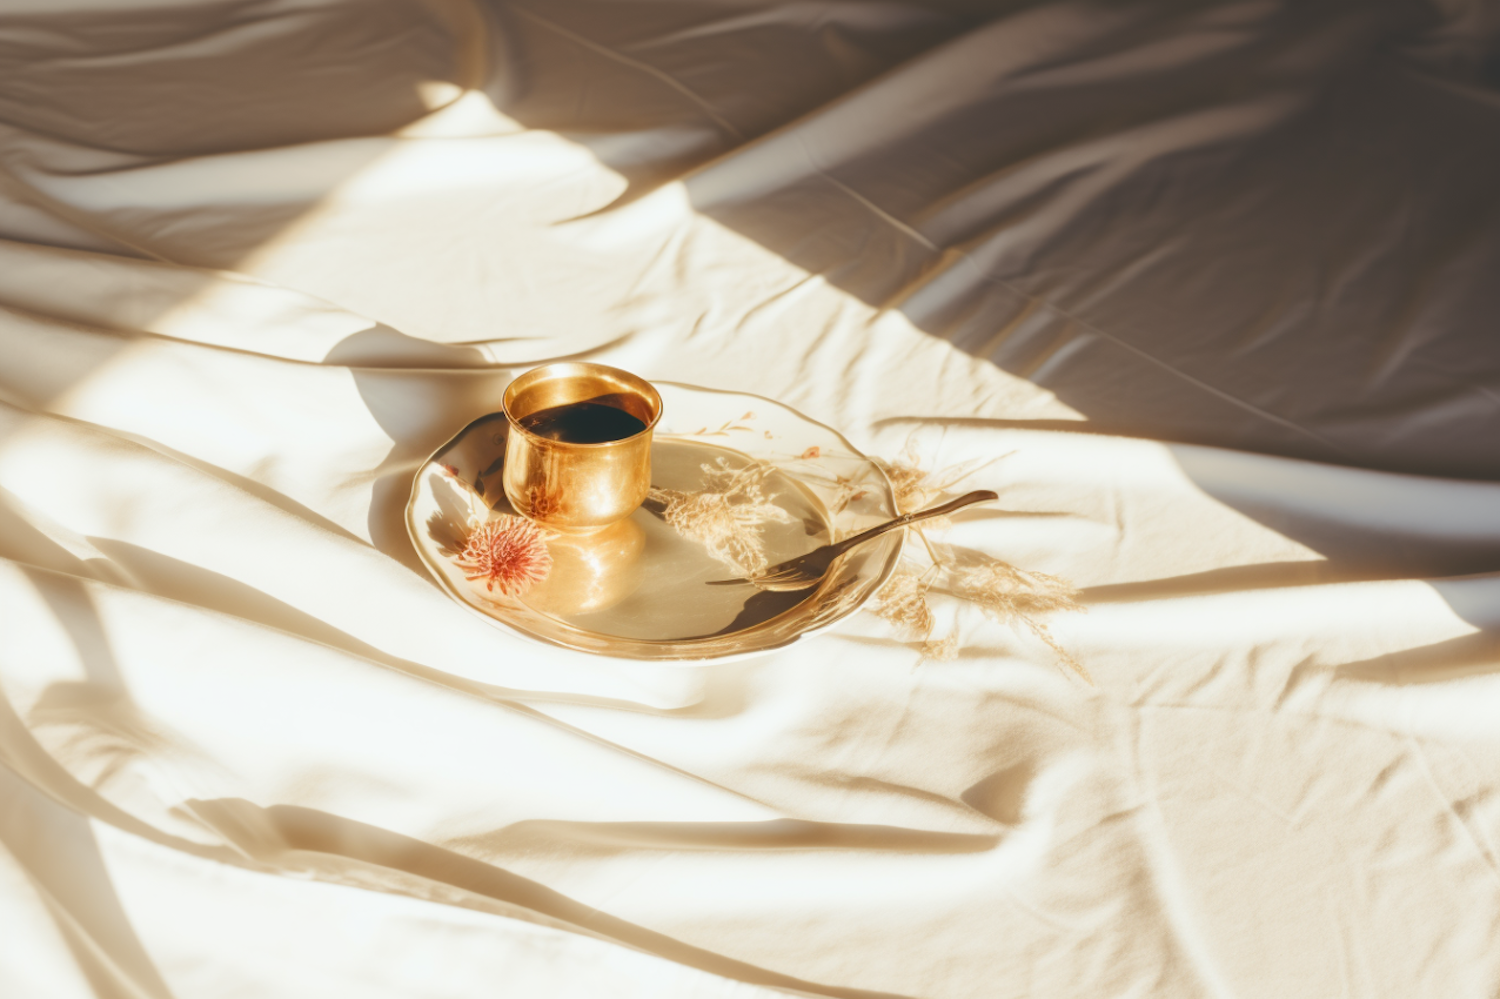 Serene Elegance: A Golden Cup Still Life on Sunlit Bedsheets